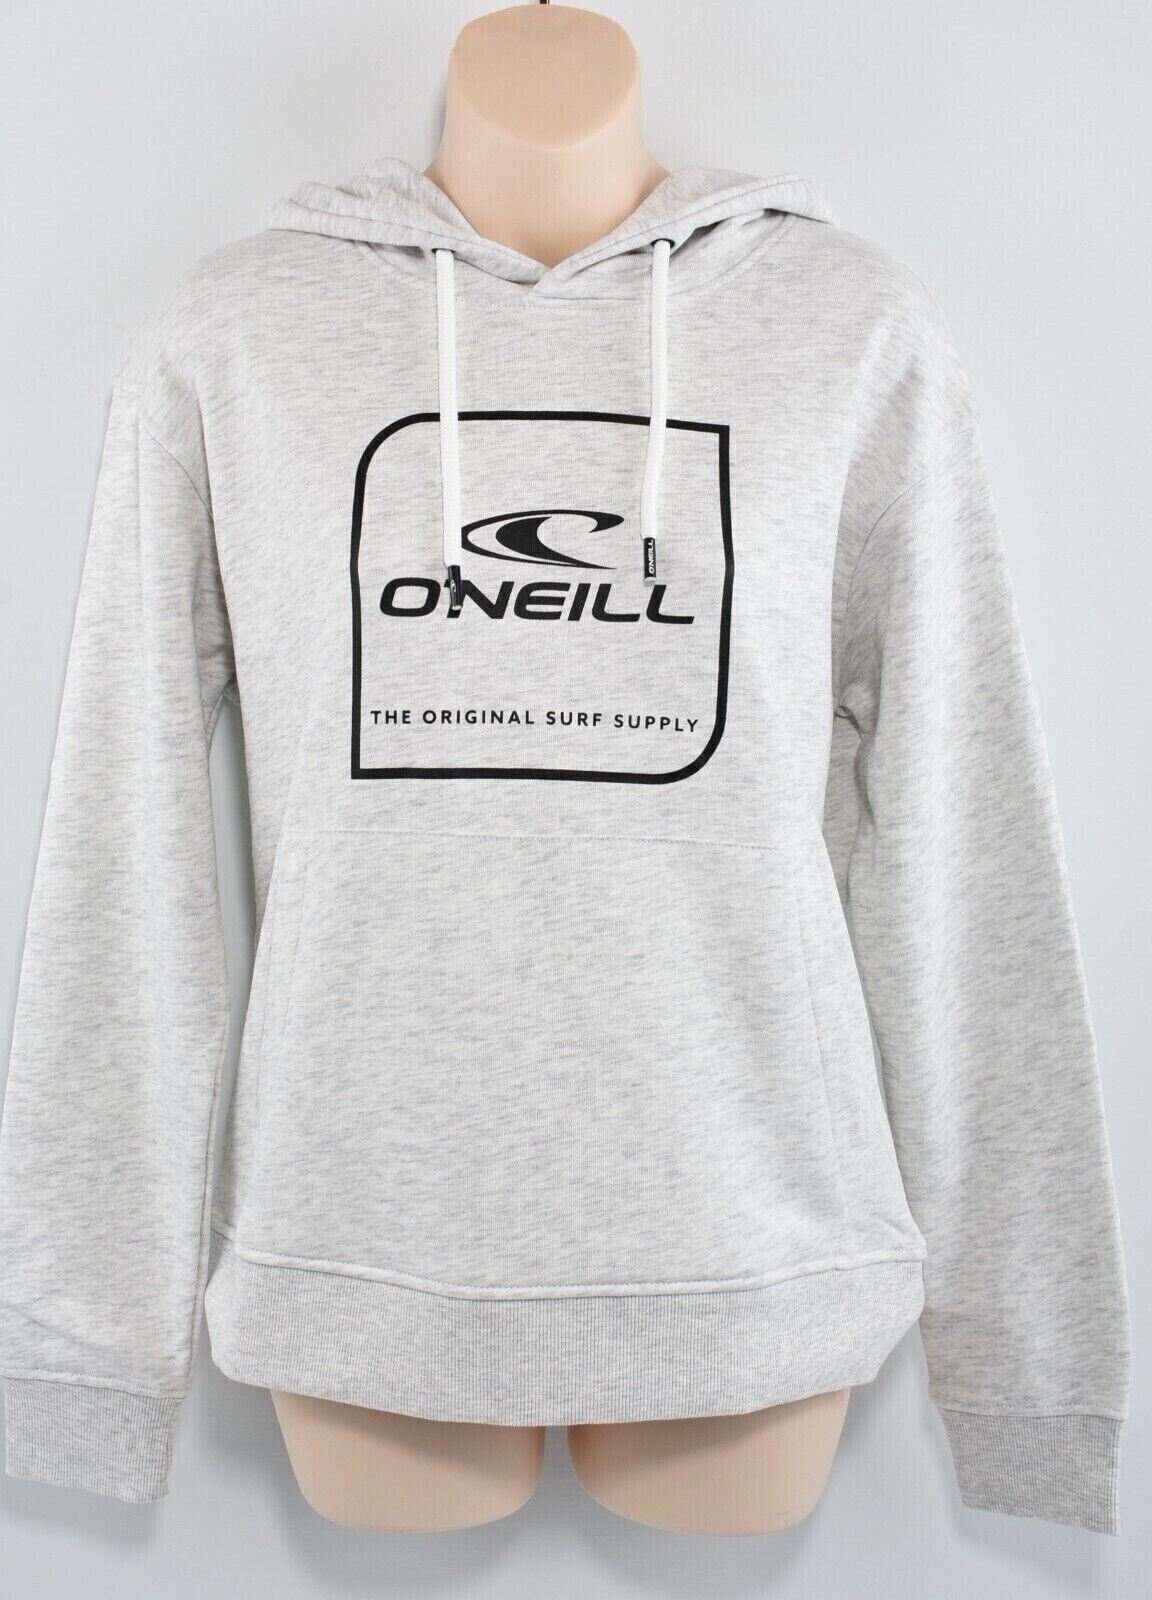 O'NEILL Women's CUBE Hoodie, Hooded Sweatshirt, White/Grey Melange, size XS /8